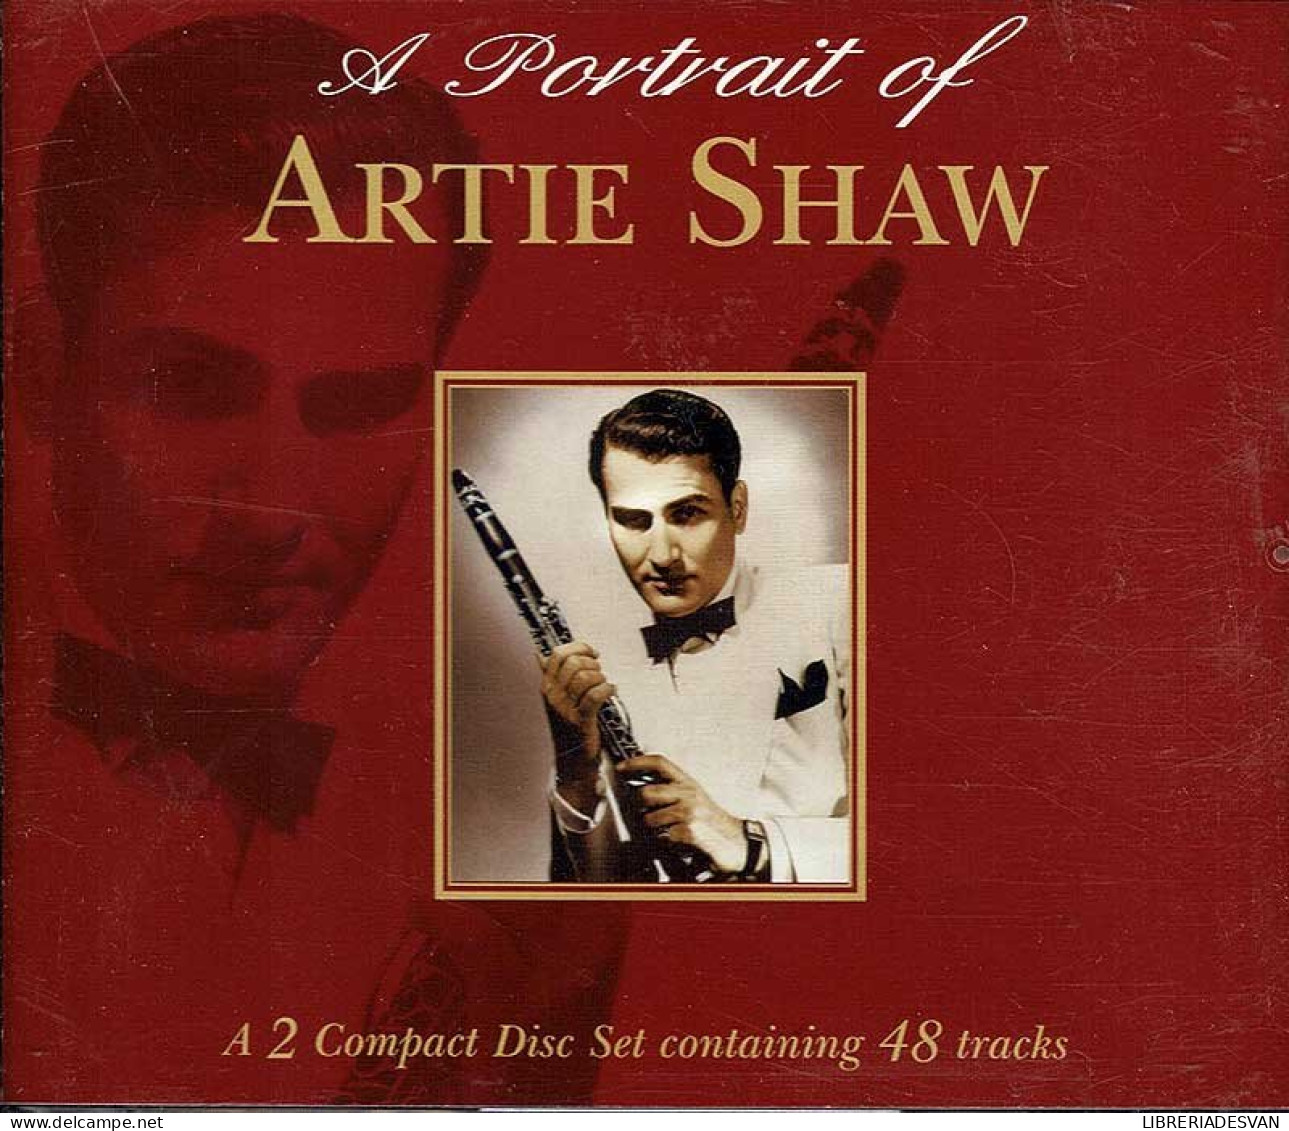 Artie Shaw - A Portrait Of Artie Shaw. 2 X CD - Jazz